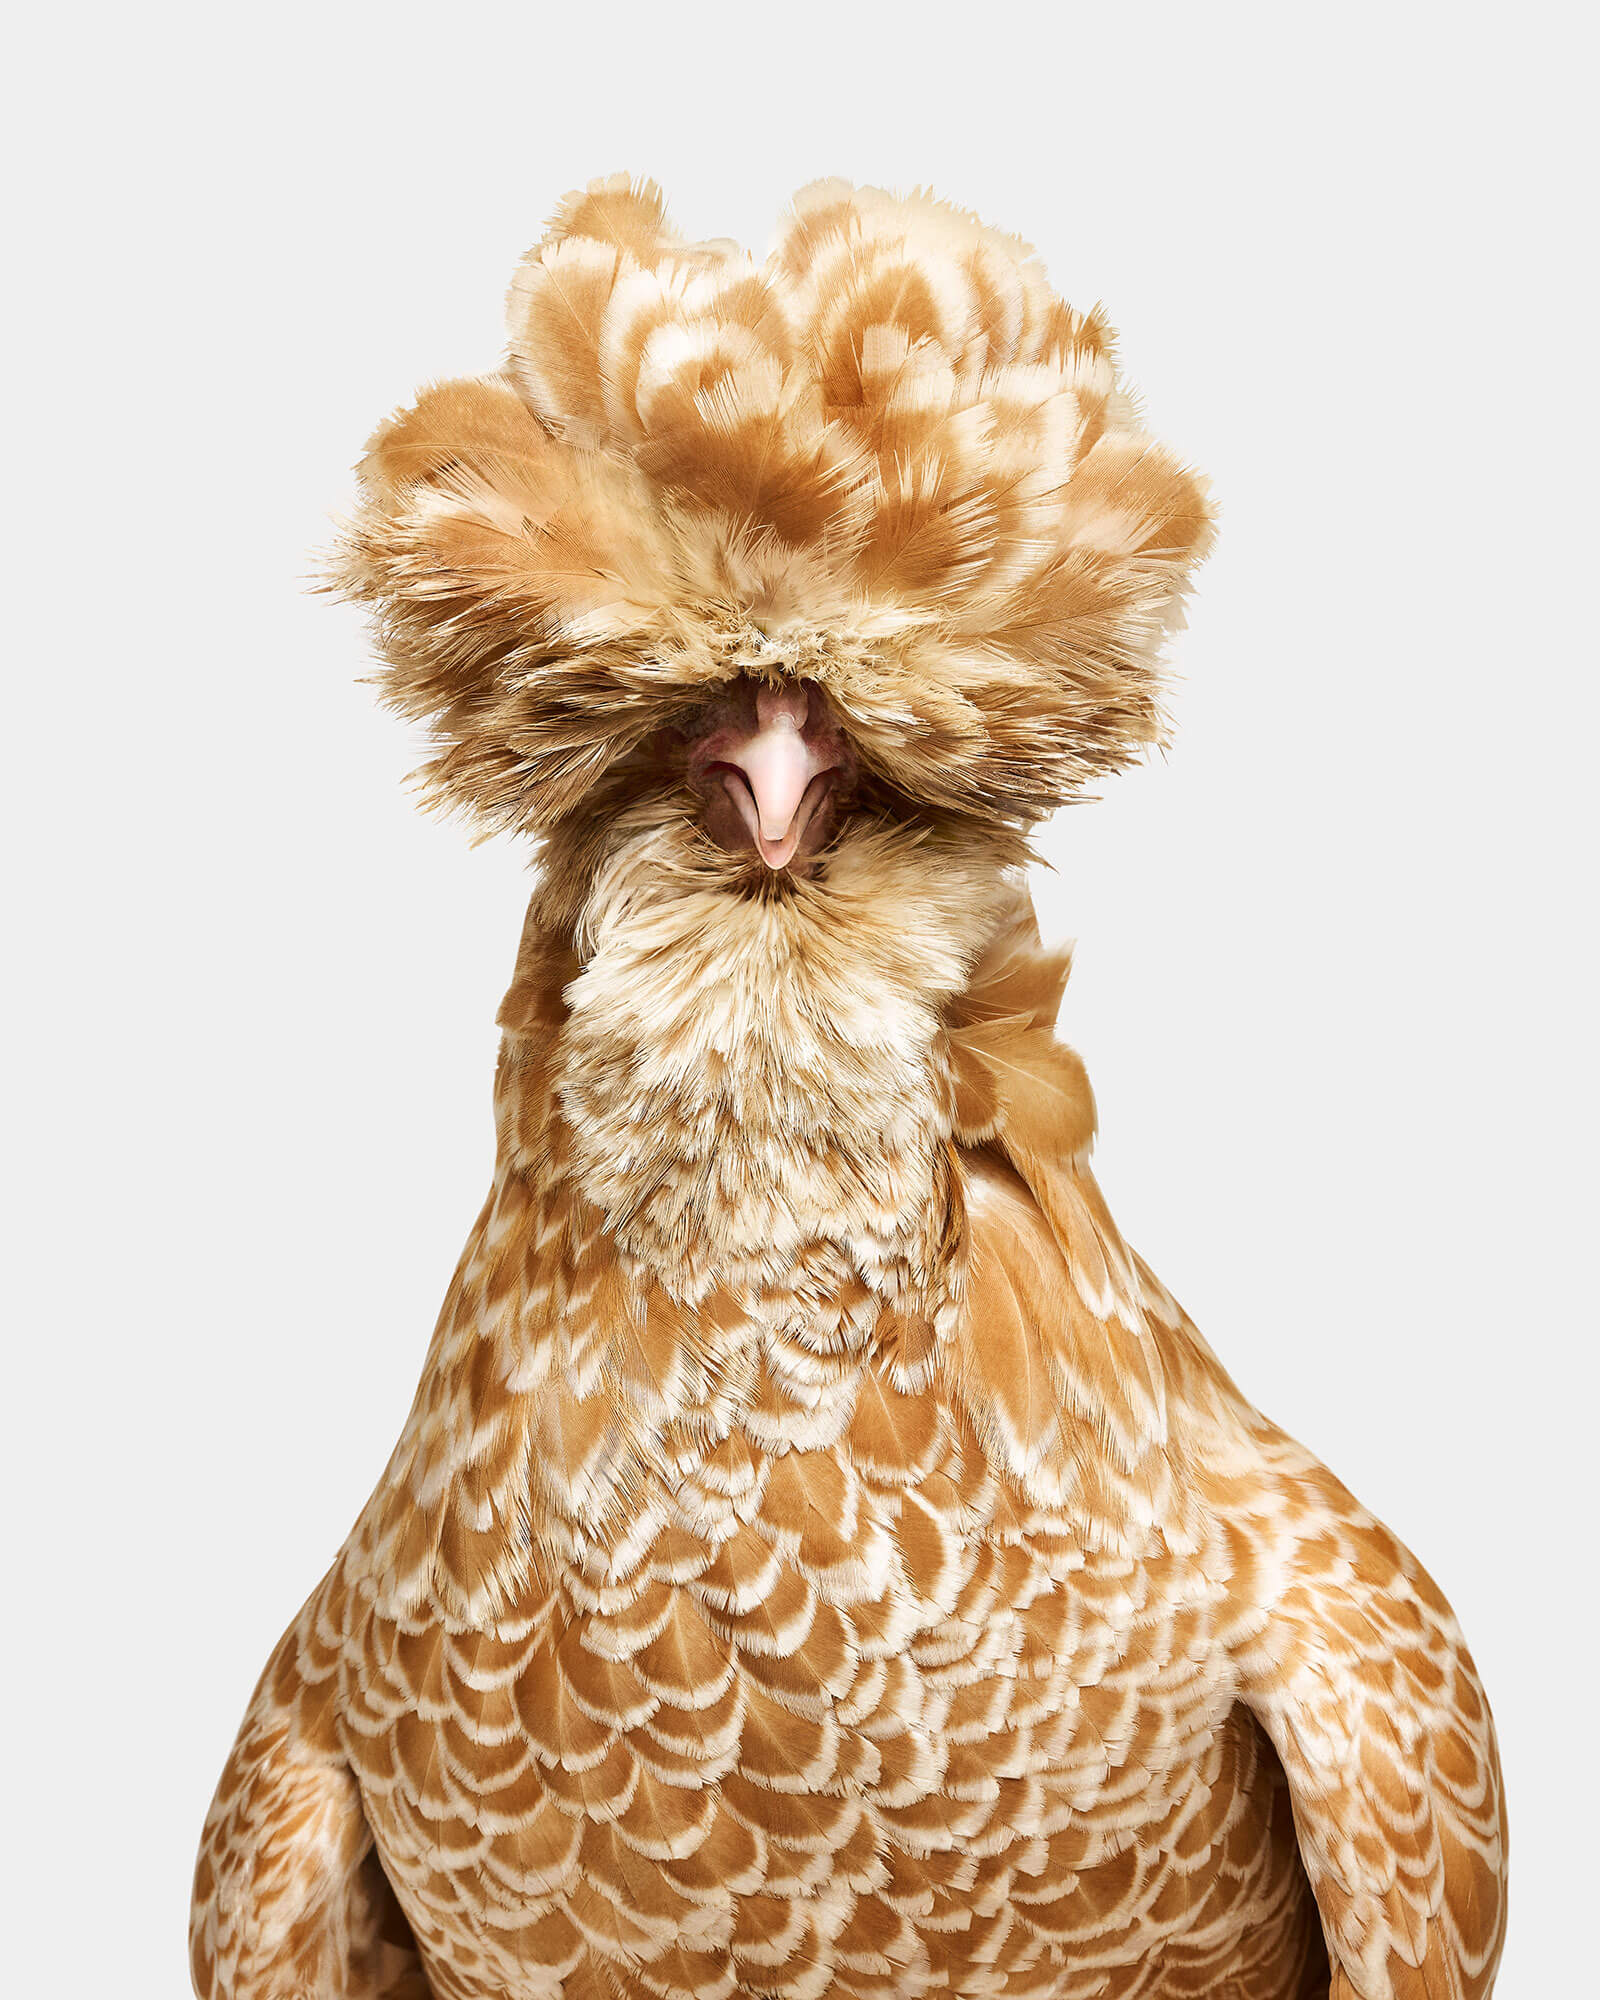 Image of Bantam Buff Laced Polish Hen No. 1, Denison